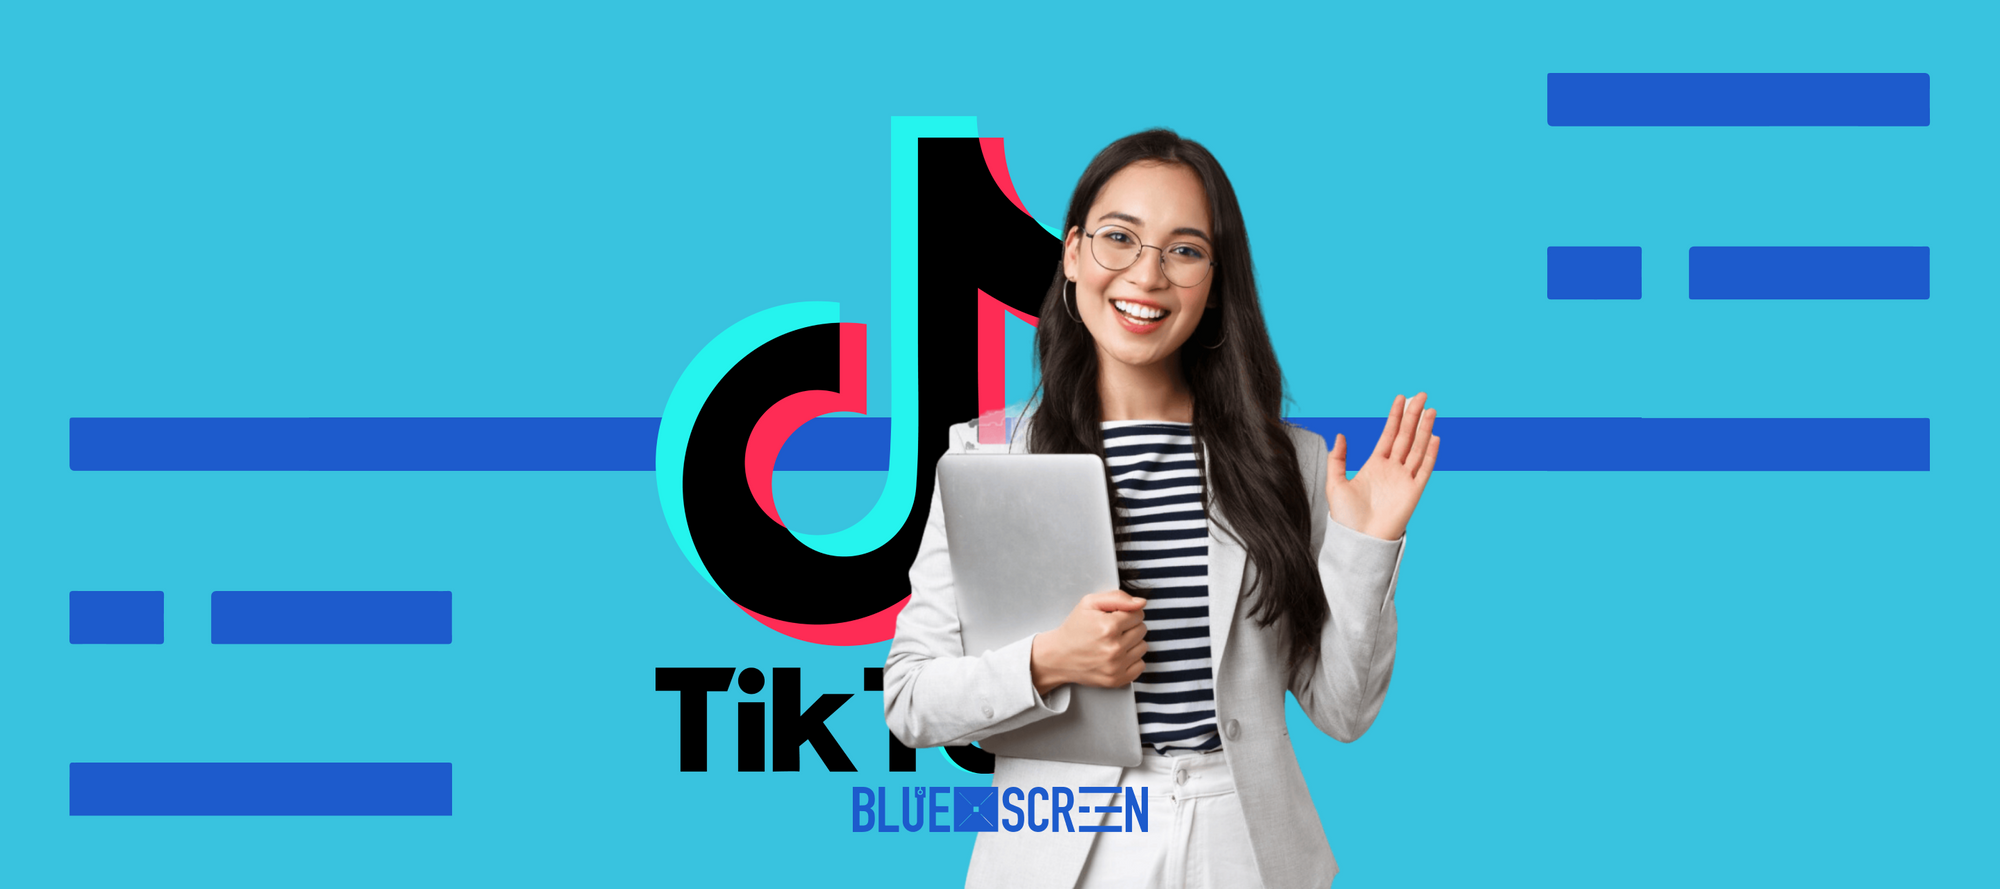 TikTok запускает конкурс для учителей и преподавателей в Казахстане